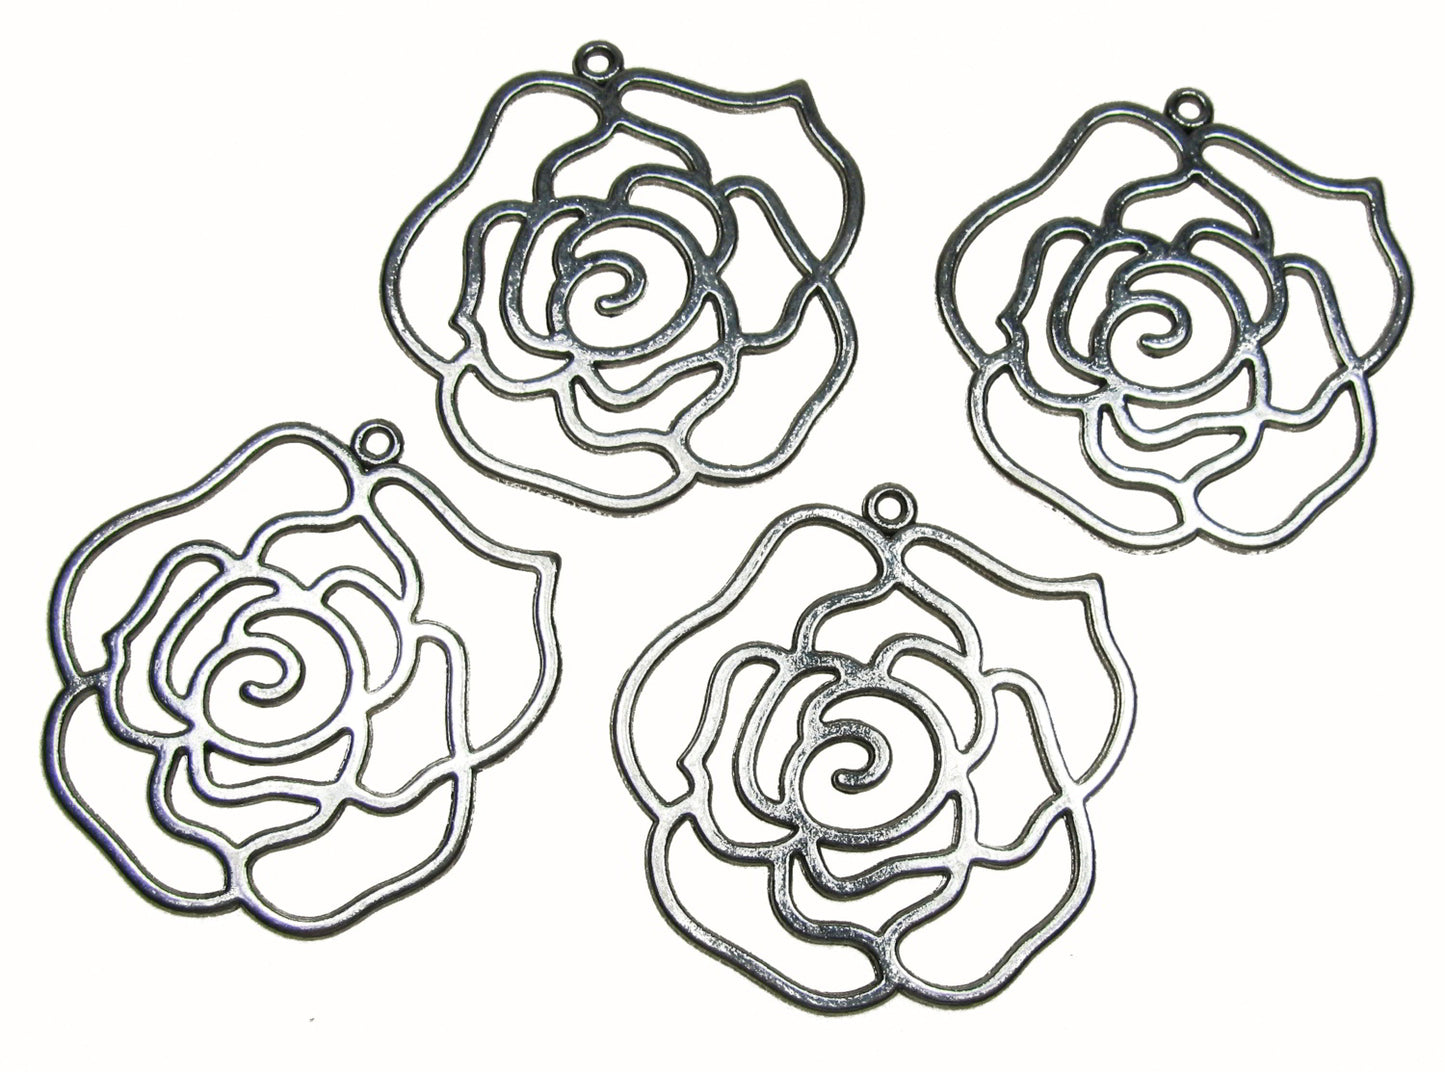 6 Metallanhänger Rose silberfarben, 3,95 x 4,2cm, Retro Schmuck selbst machen